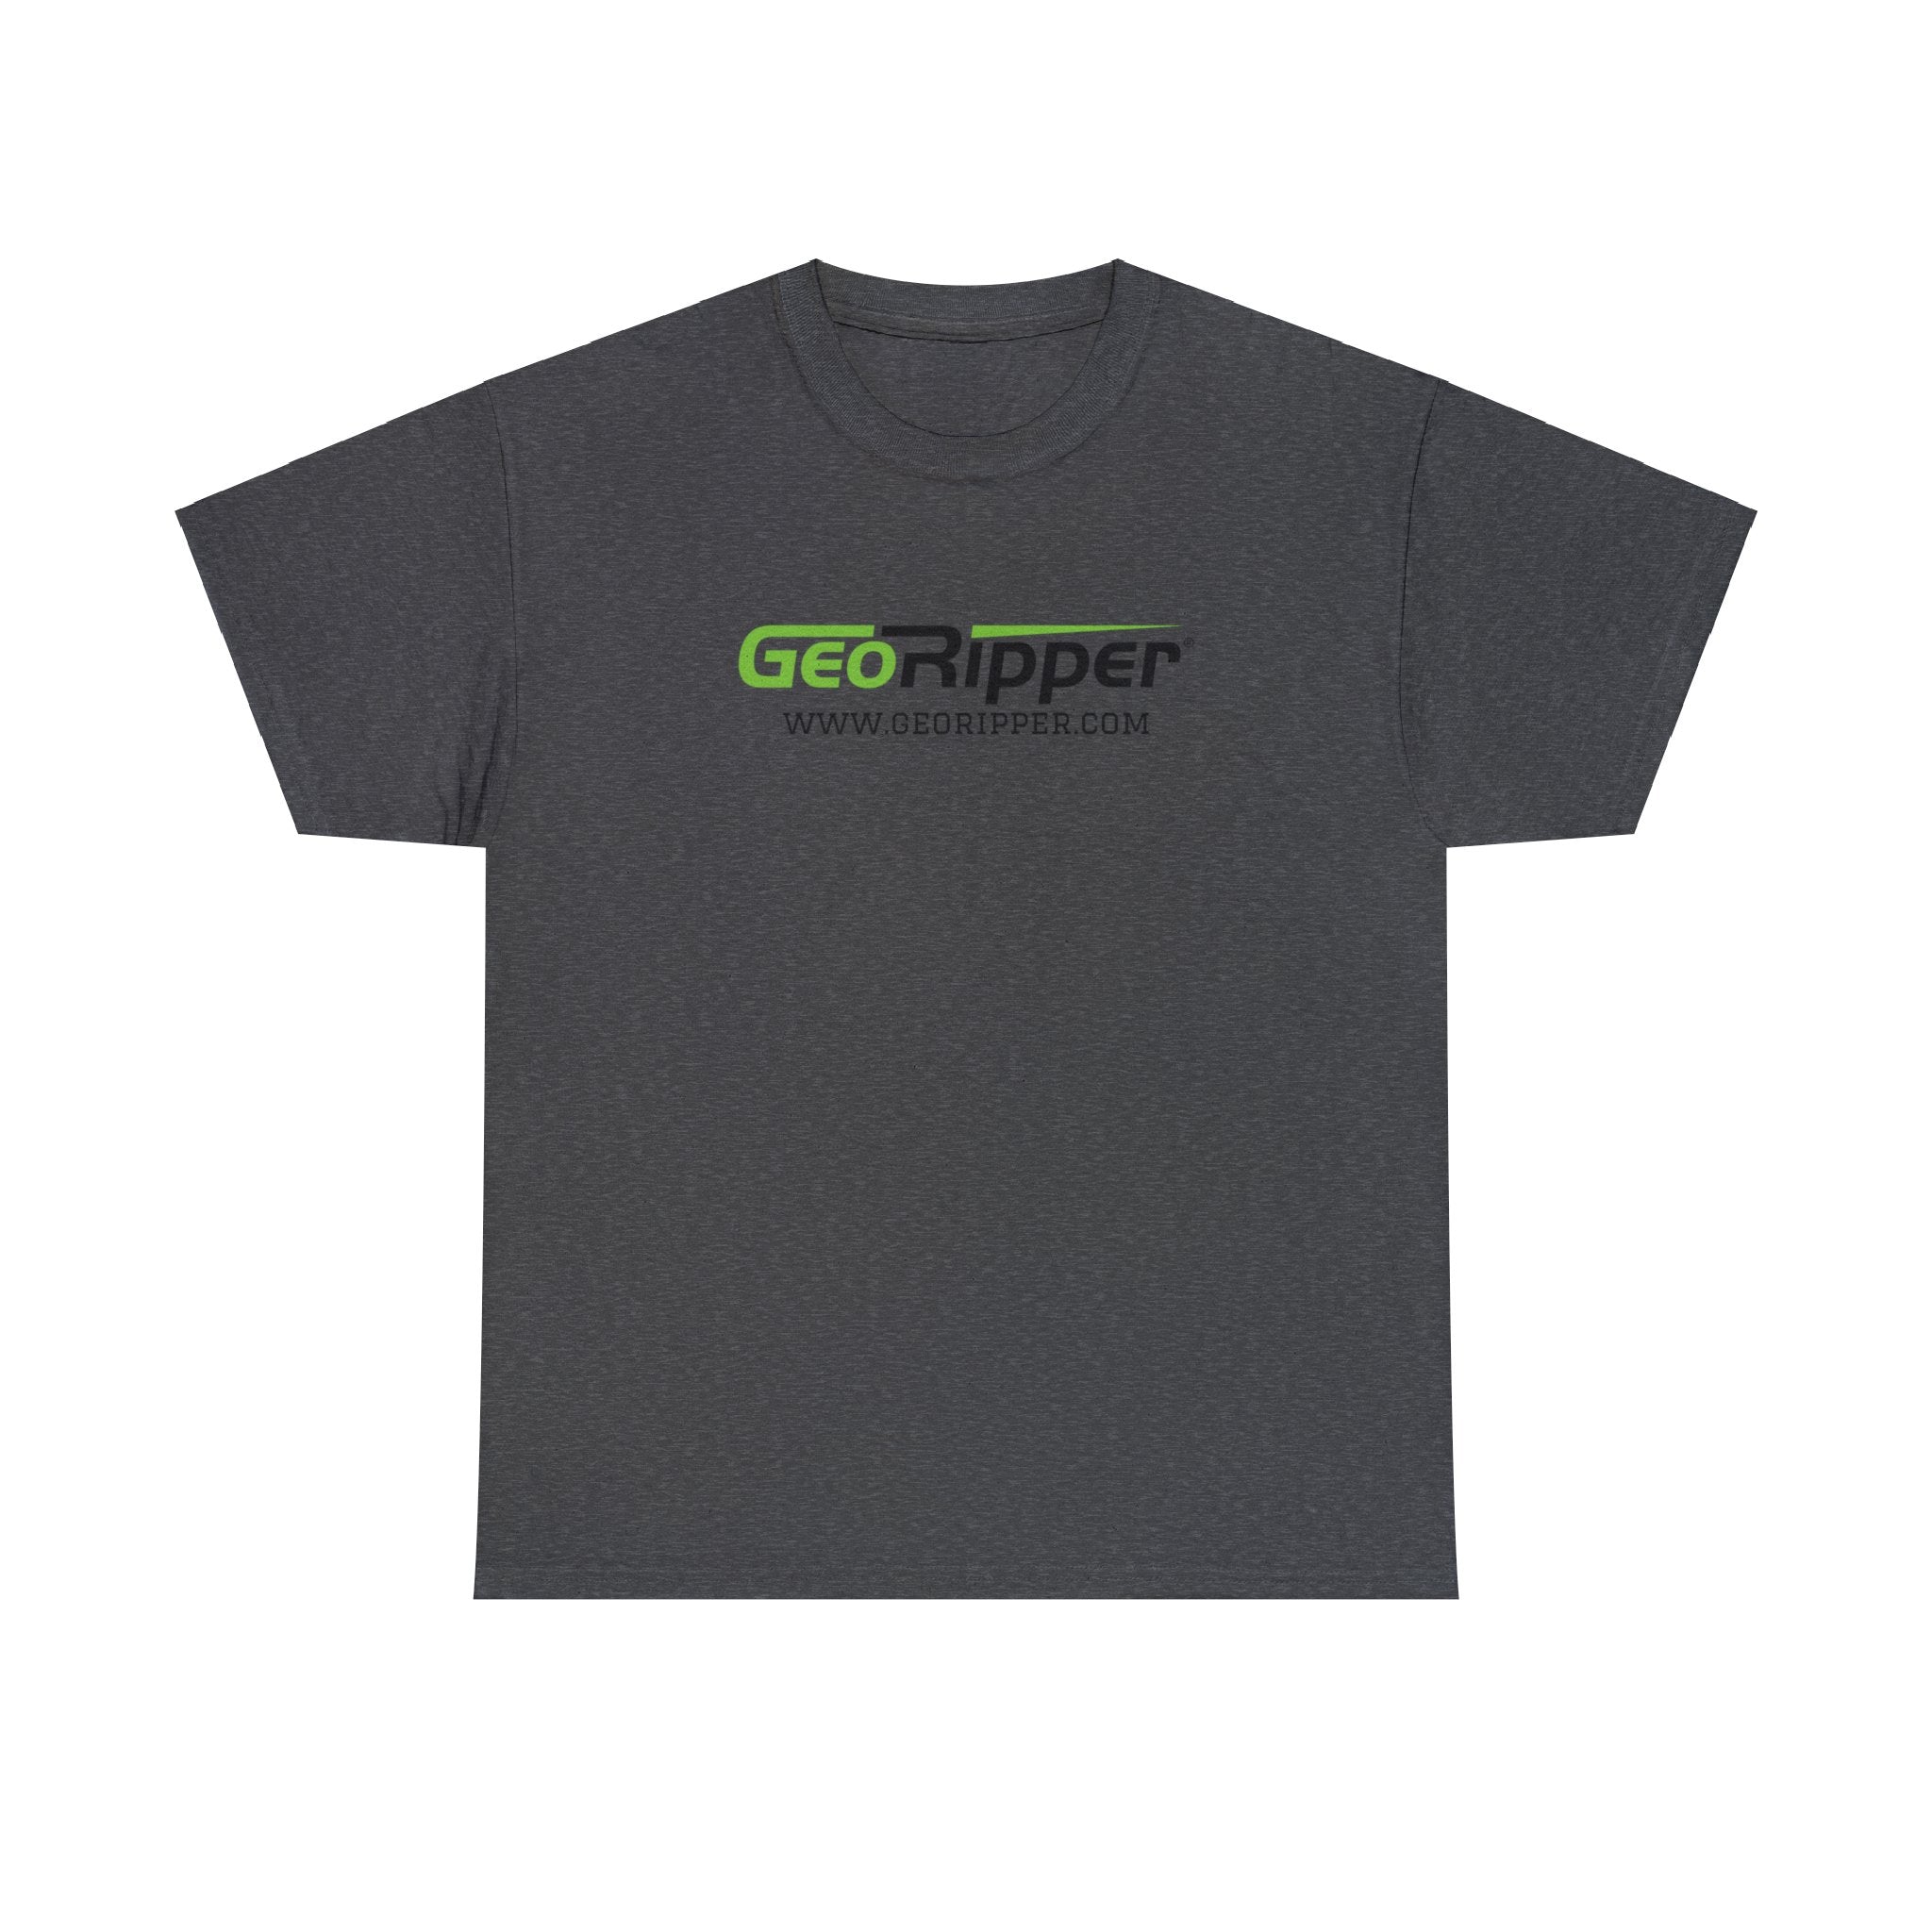 GeoRipper T-Shirt